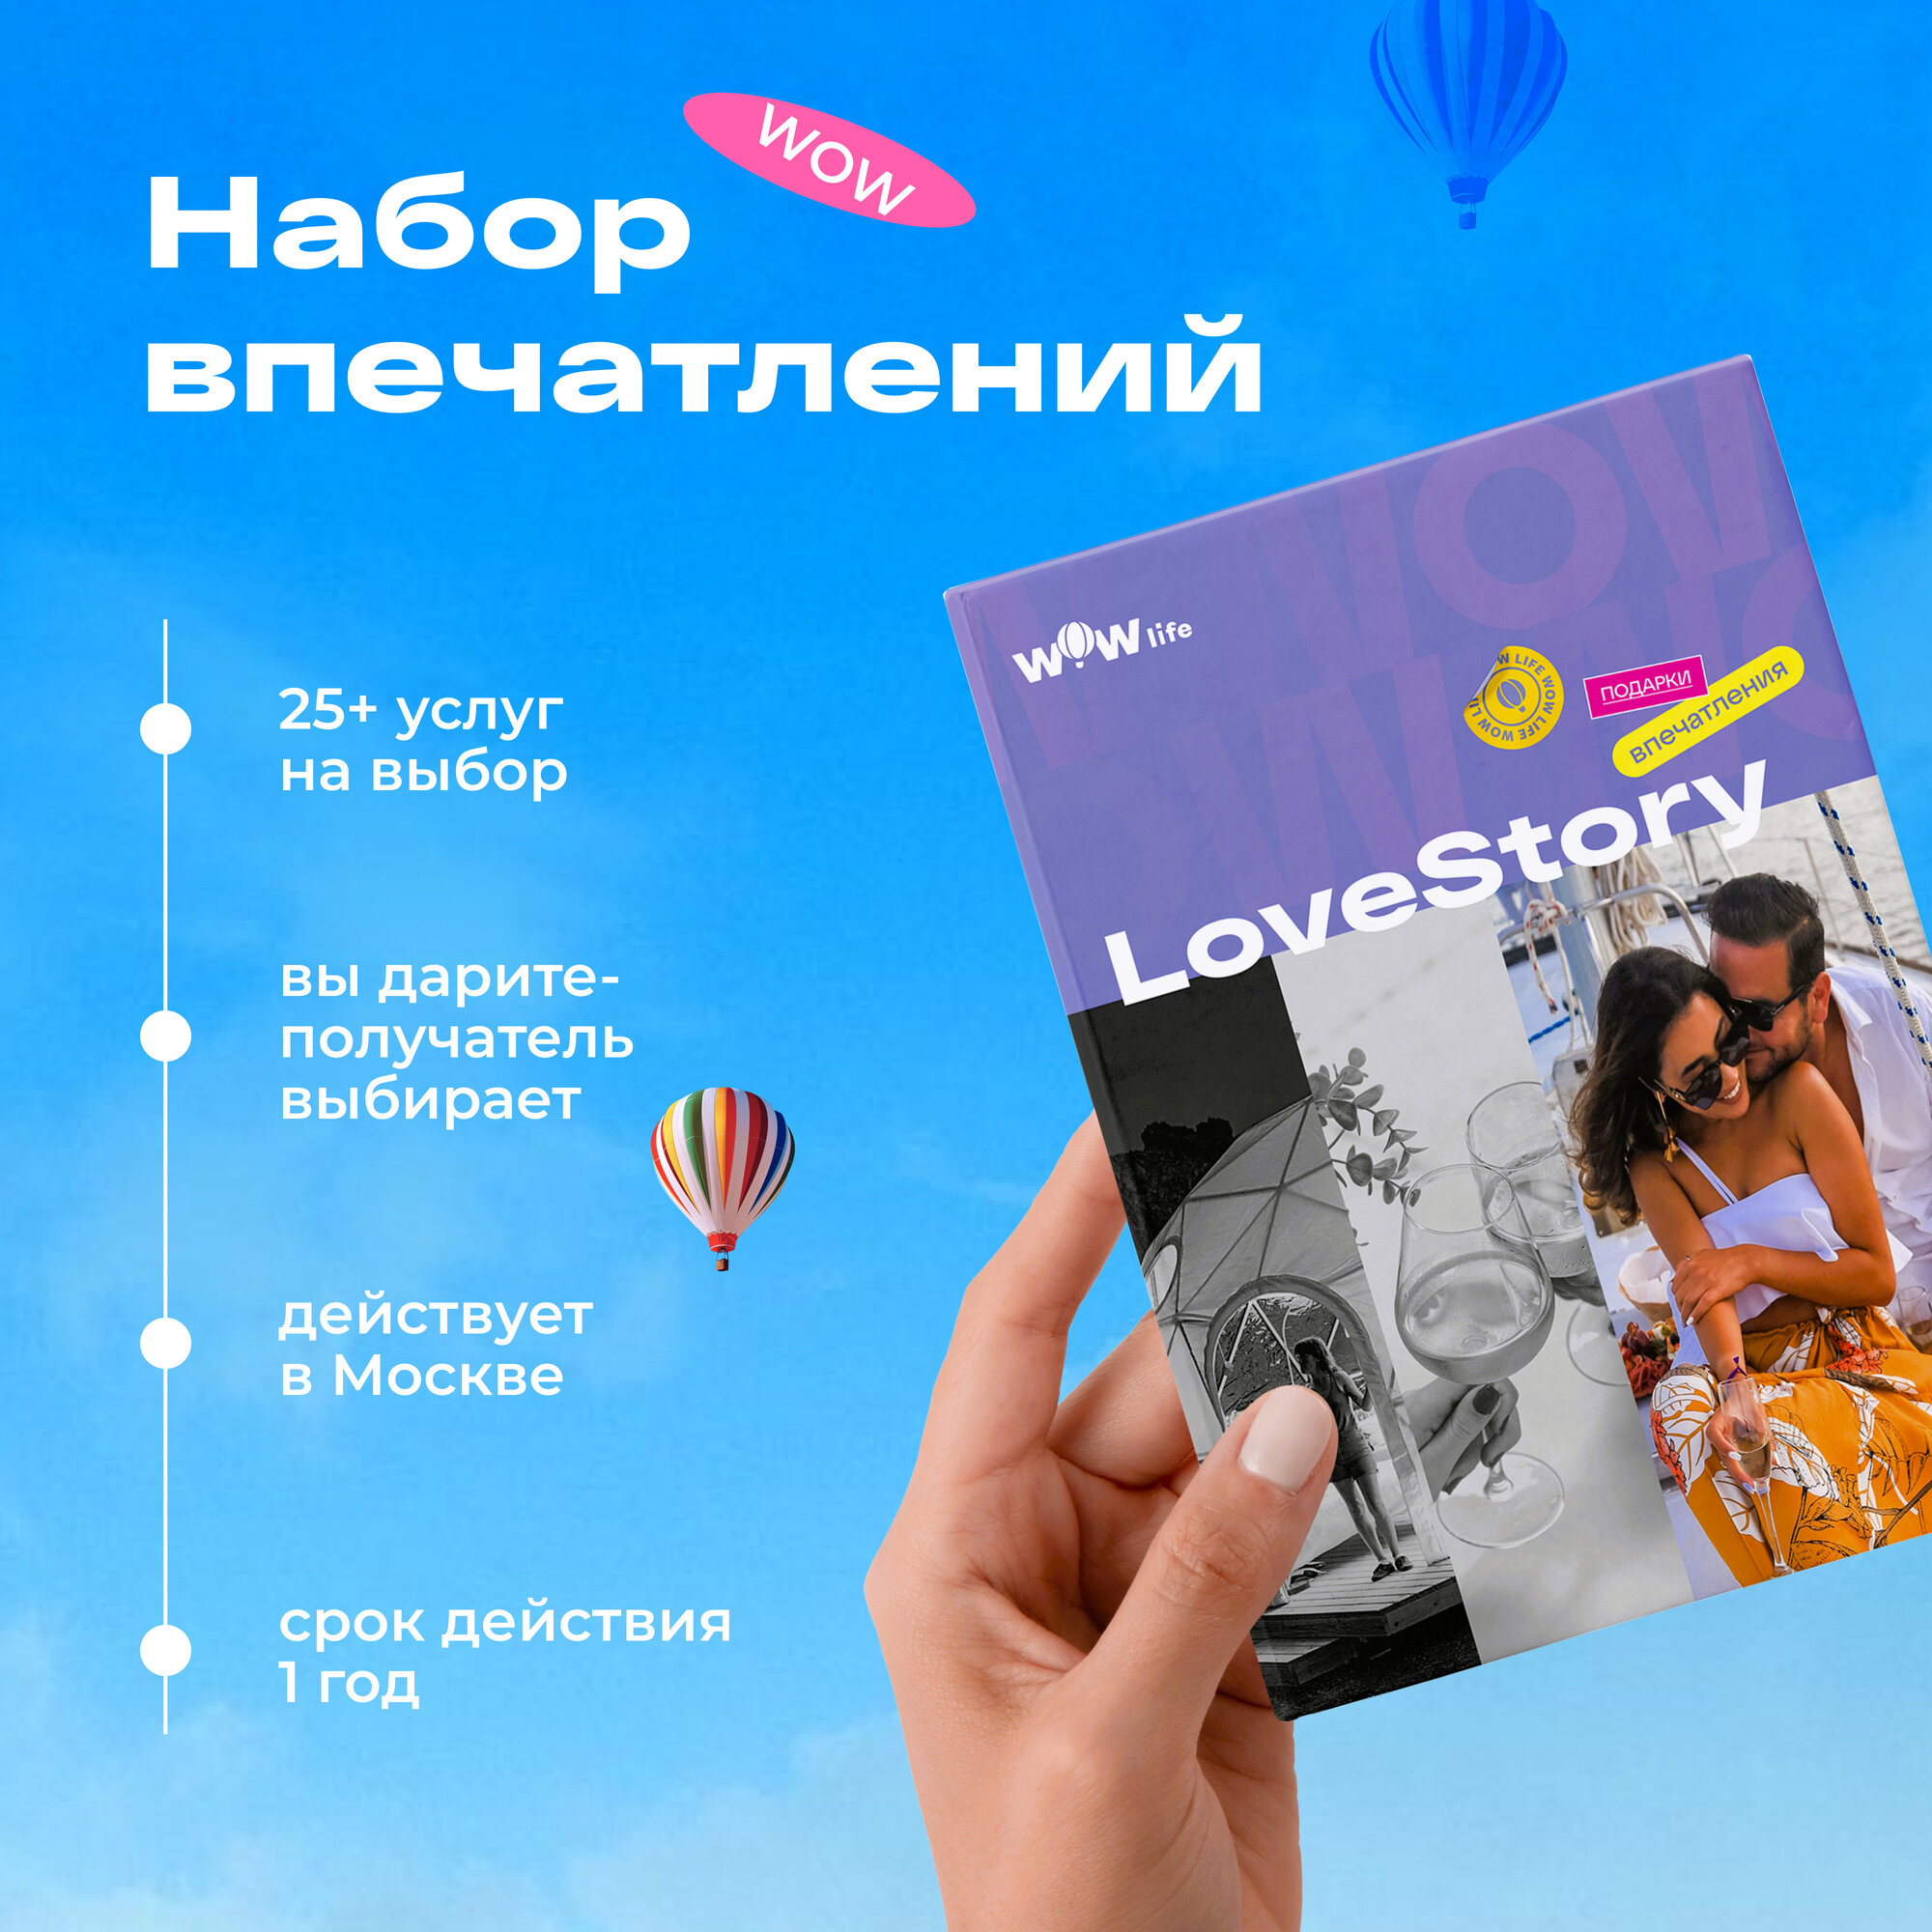 Подарочный сертификат WOWlife "LoveStory" - набор из впечатлений на выбор, Москва